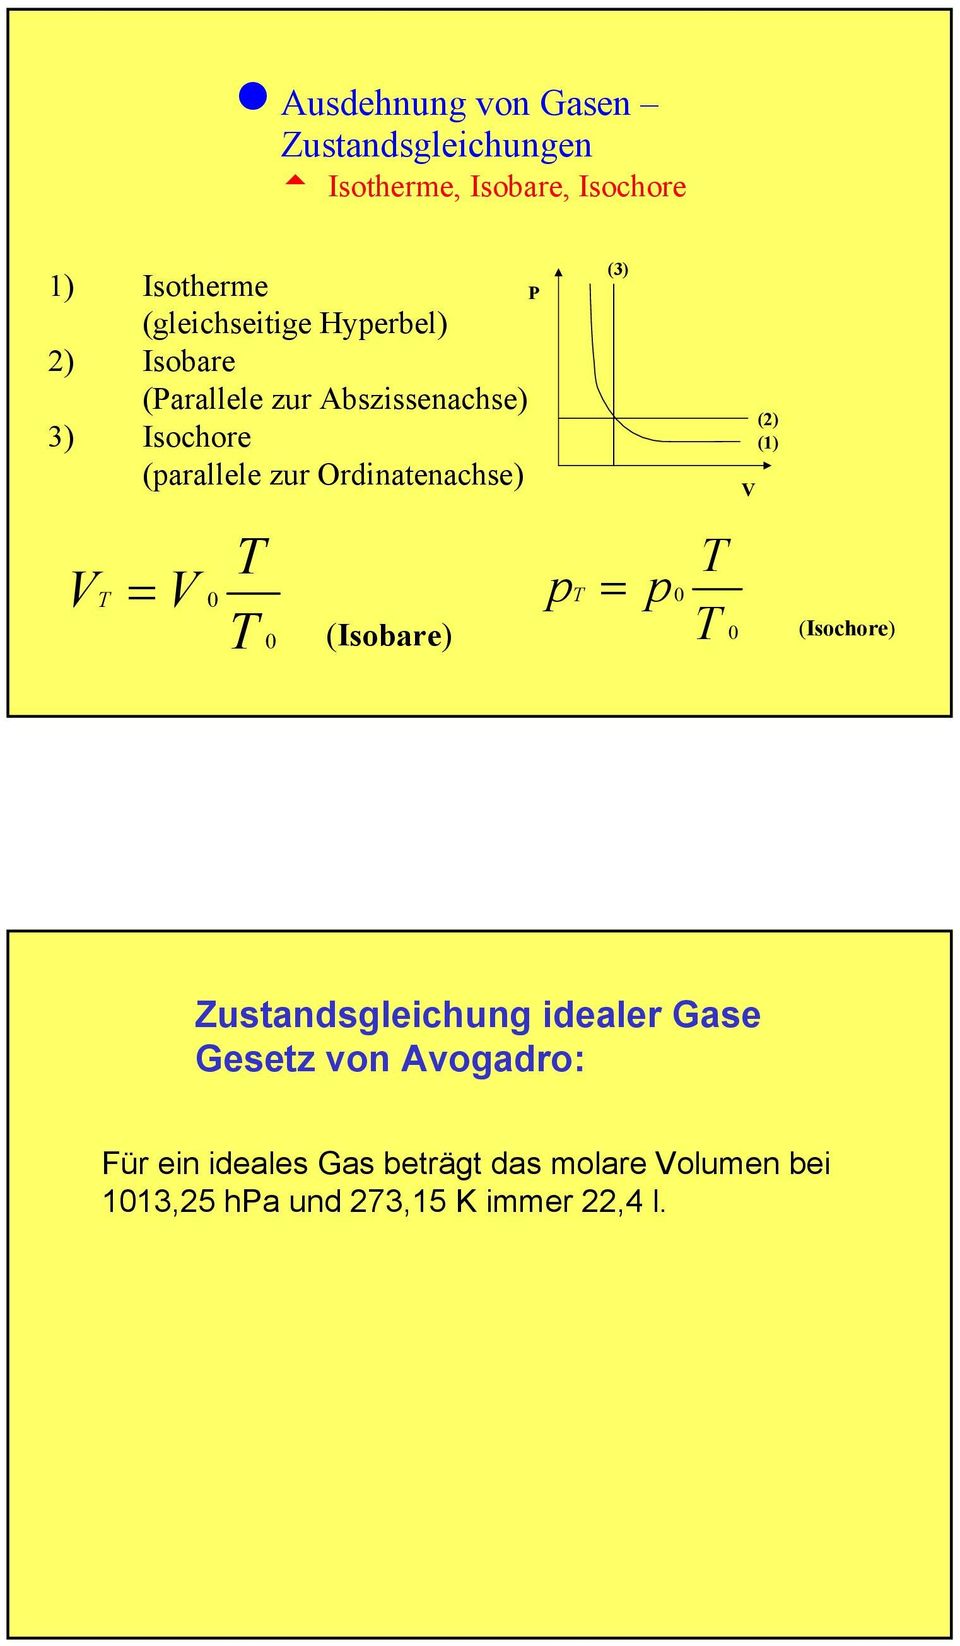 Ordinatenachse) V = V P (3) p = p (Isobare) V (2) (1) (Isochore) Zustandsgleichung idealer Gase